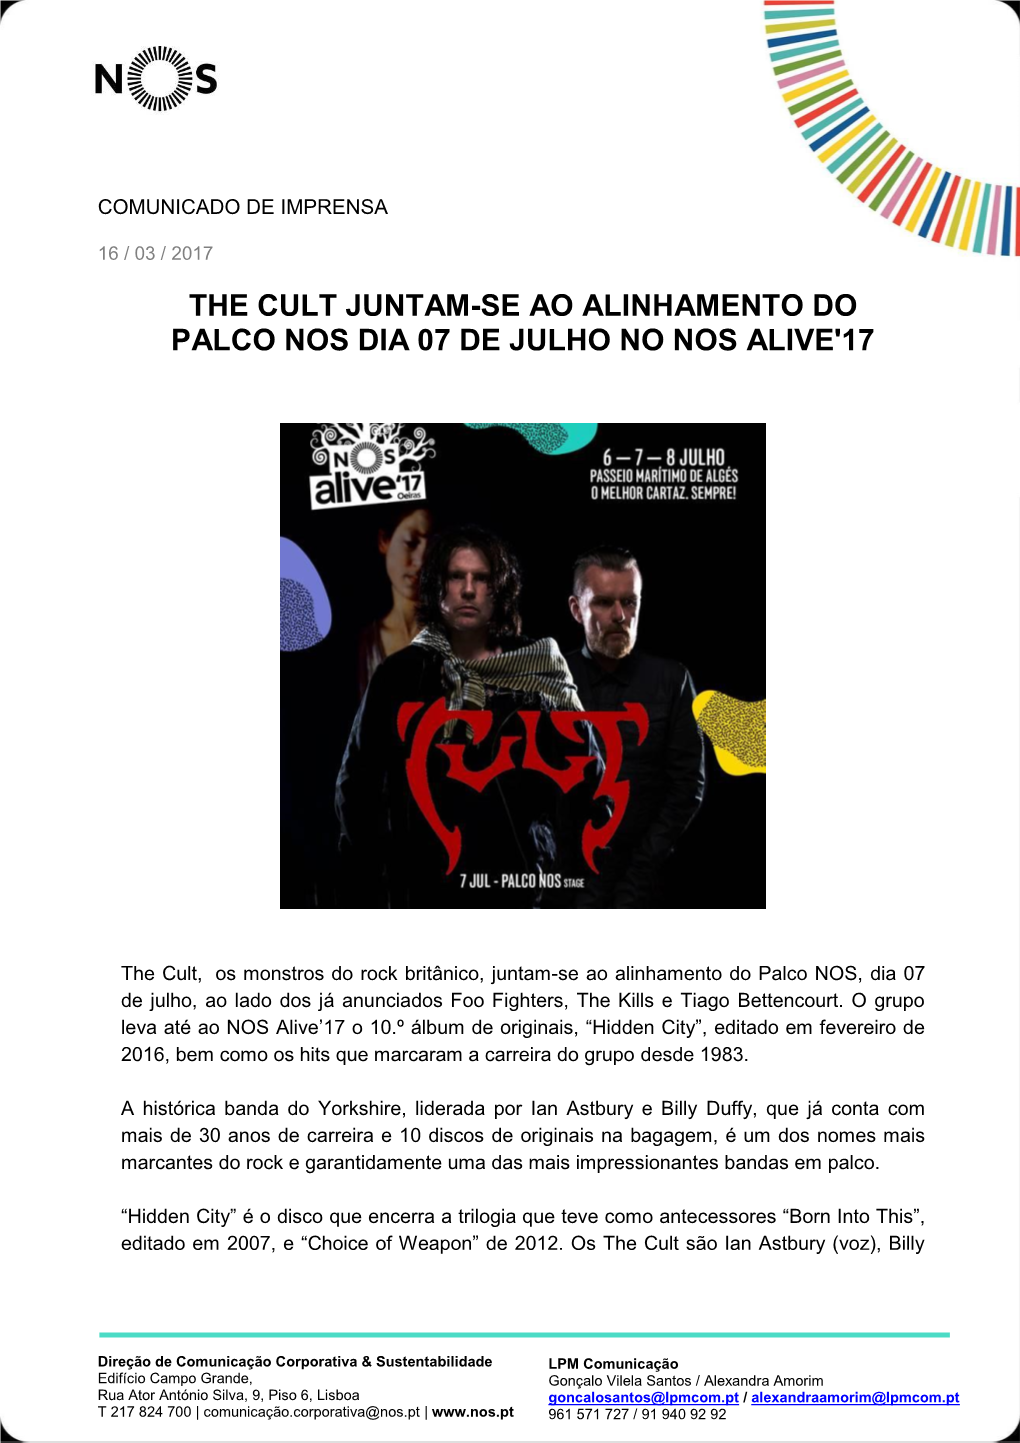 The Cult Juntam-Se Ao Alinhamento Do Palco Nos Dia 07 De Julho No Nos Alive'17